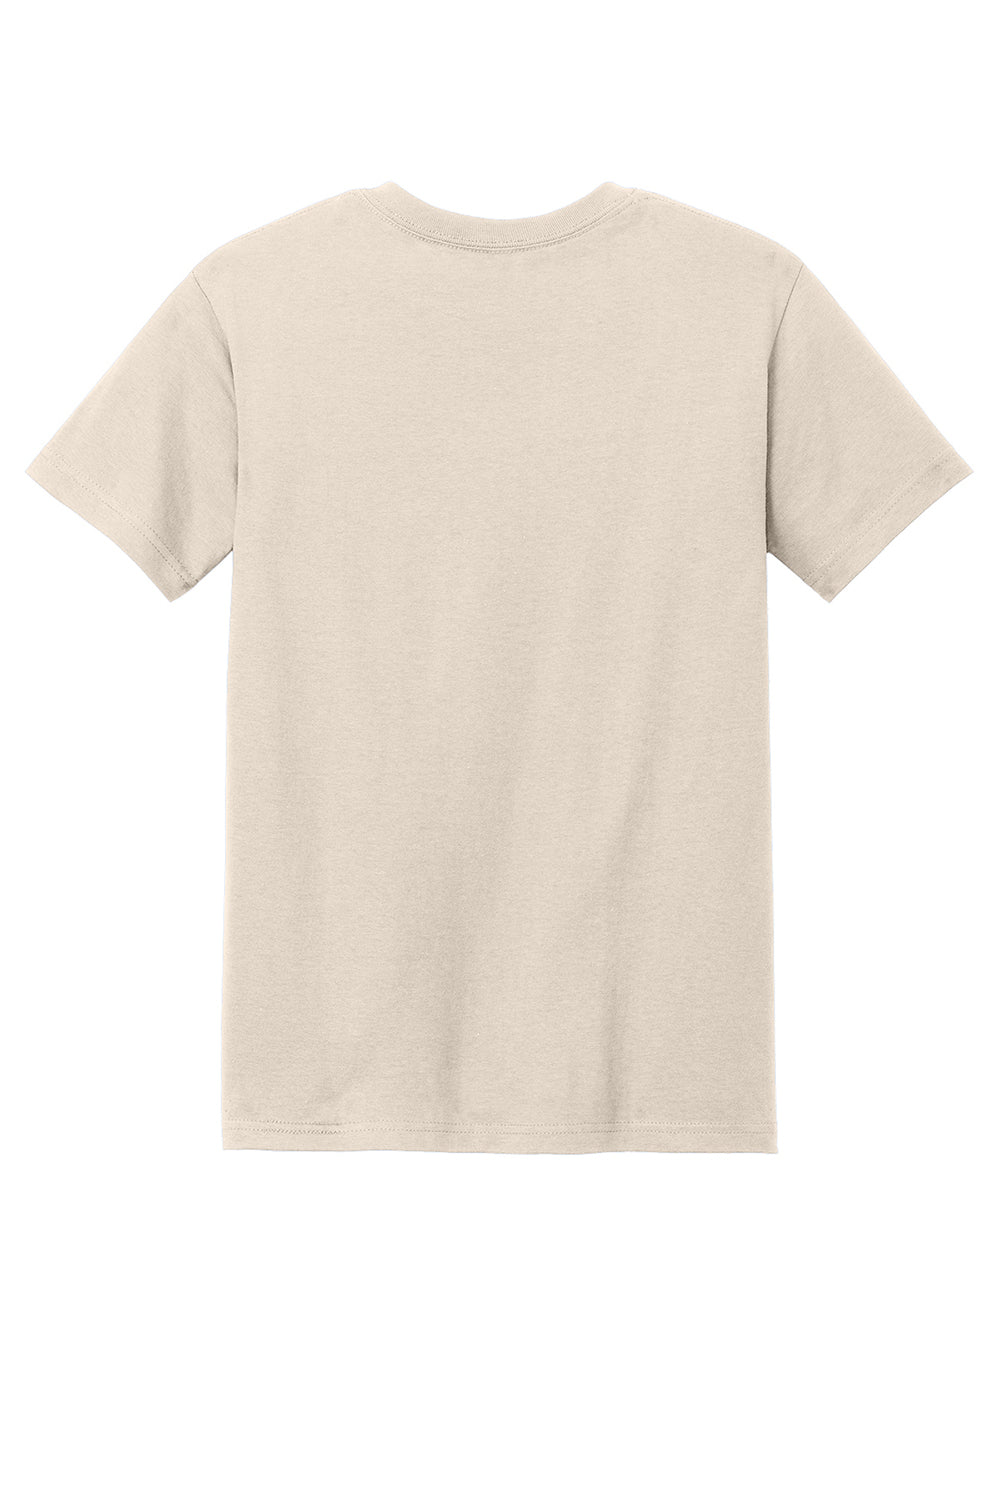 American Apparel 1301/AL1301 Mens Short Sleeve Crewneck T-Shirt Cream Flat Back